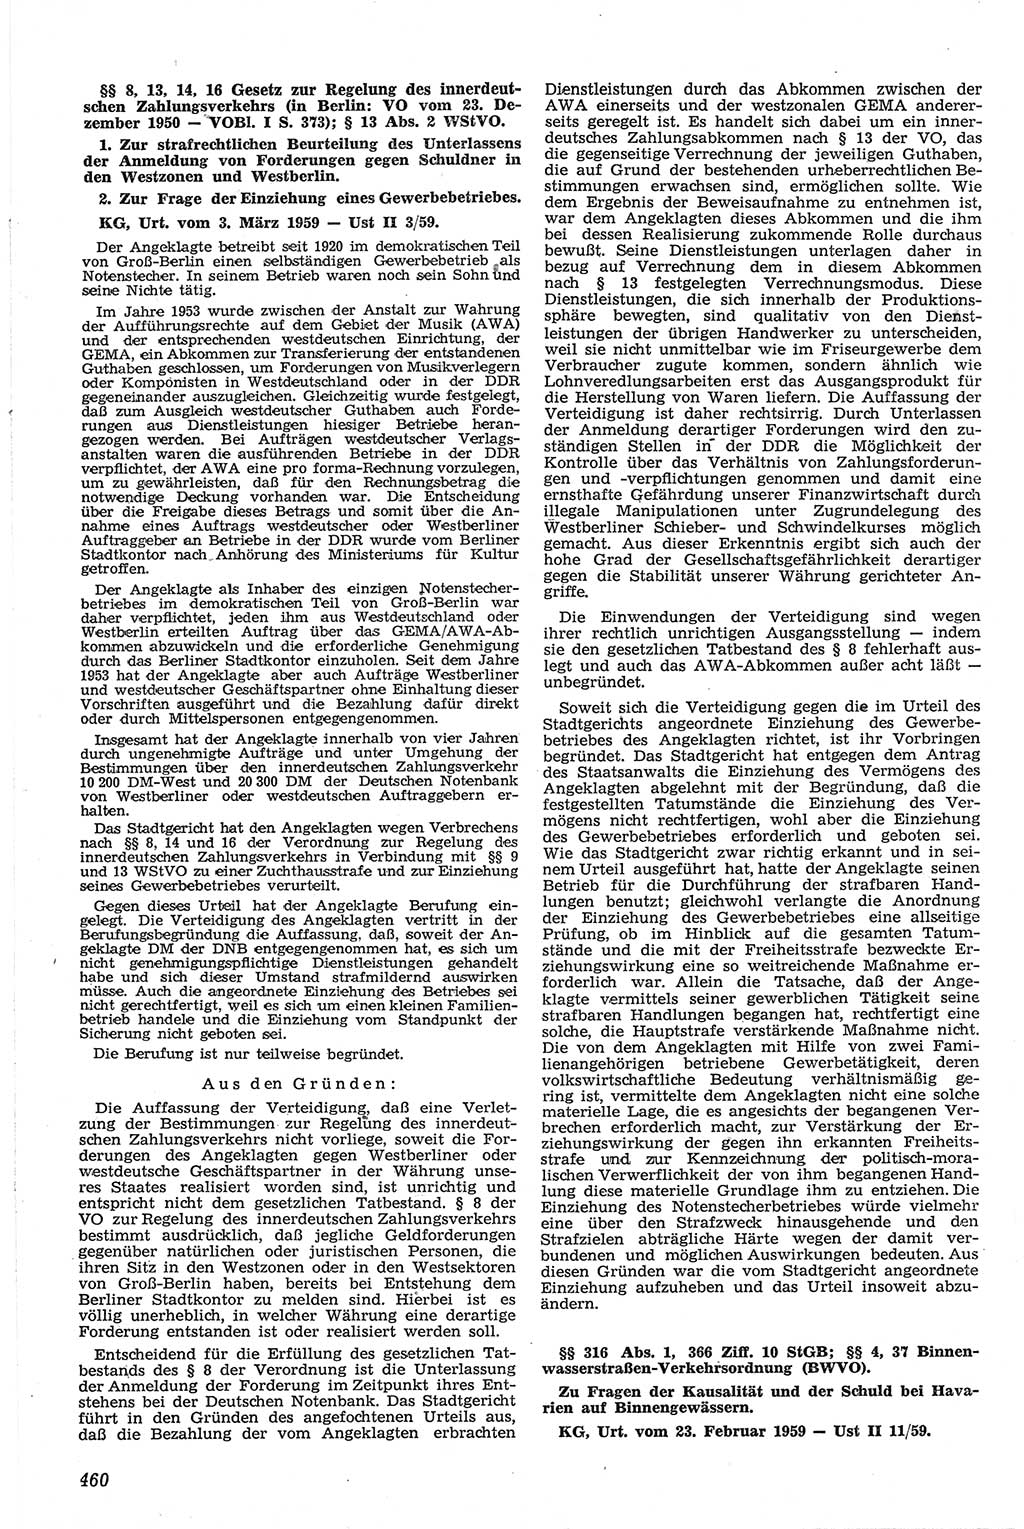 Neue Justiz (NJ), Zeitschrift für Recht und Rechtswissenschaft [Deutsche Demokratische Republik (DDR)], 13. Jahrgang 1959, Seite 460 (NJ DDR 1959, S. 460)